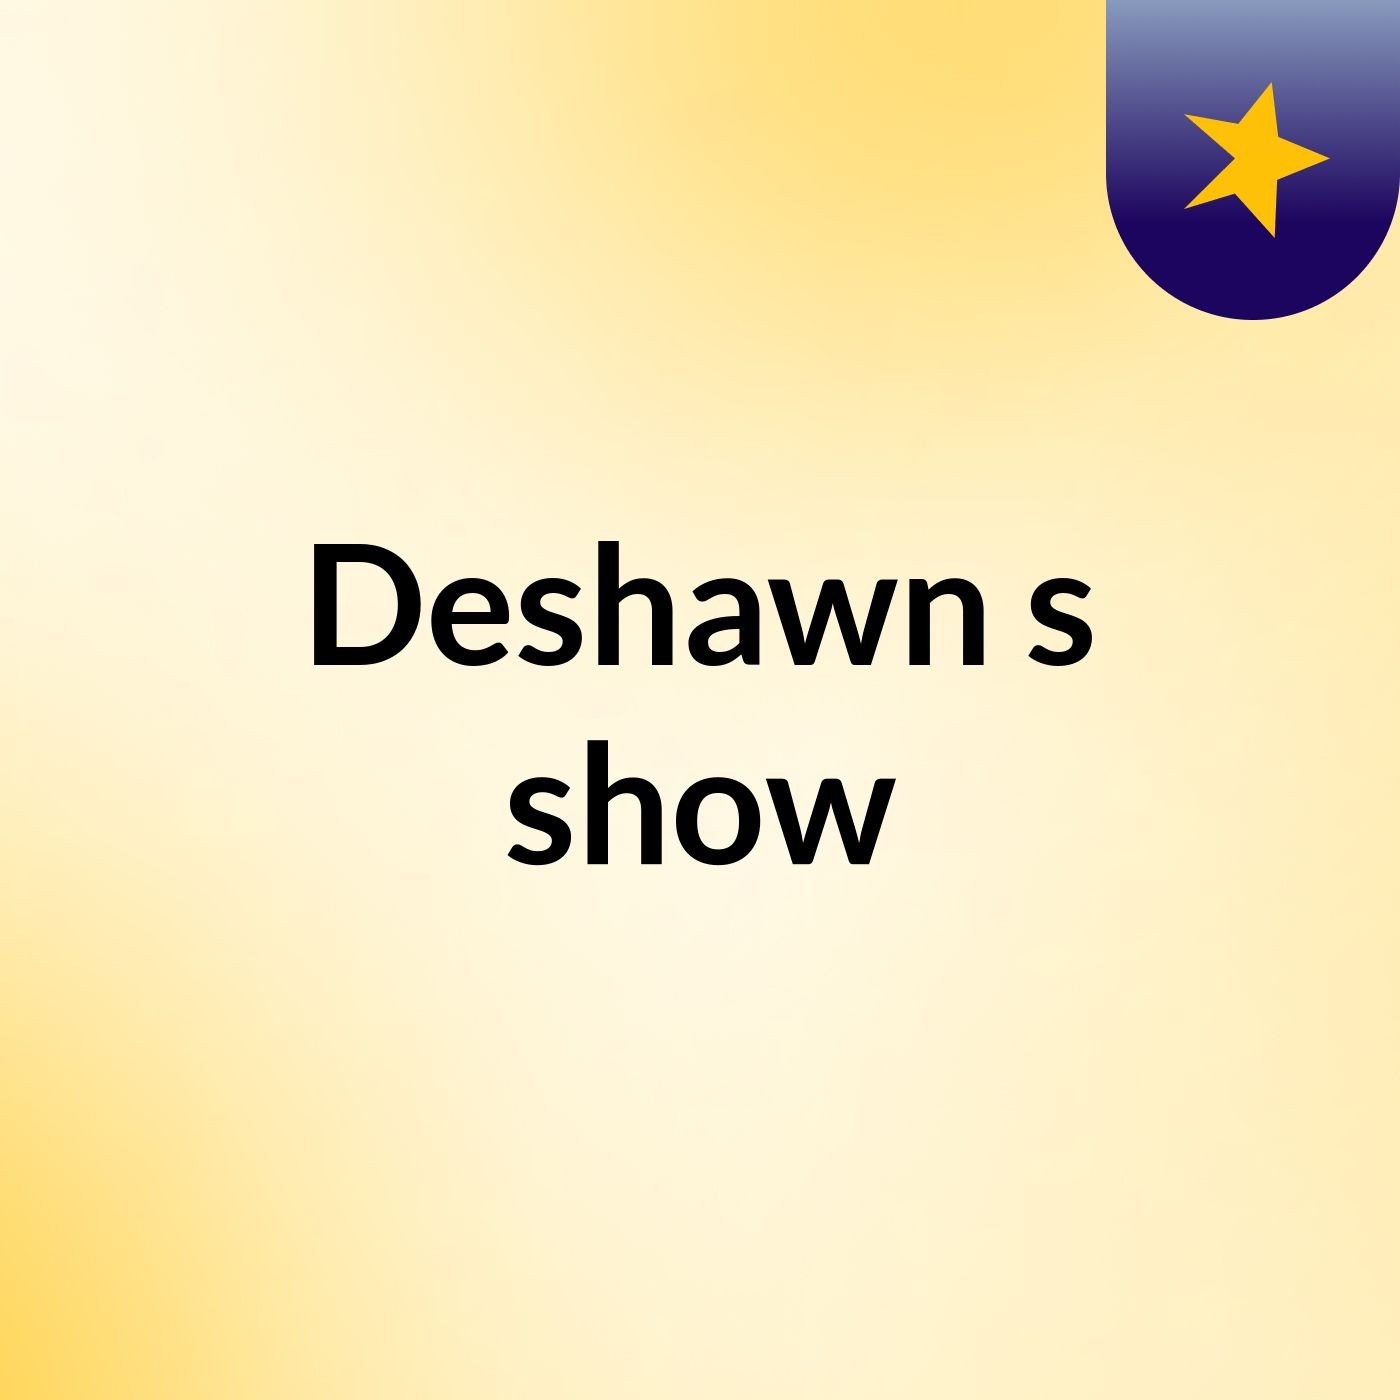 Episode 4 - Deshawn's show